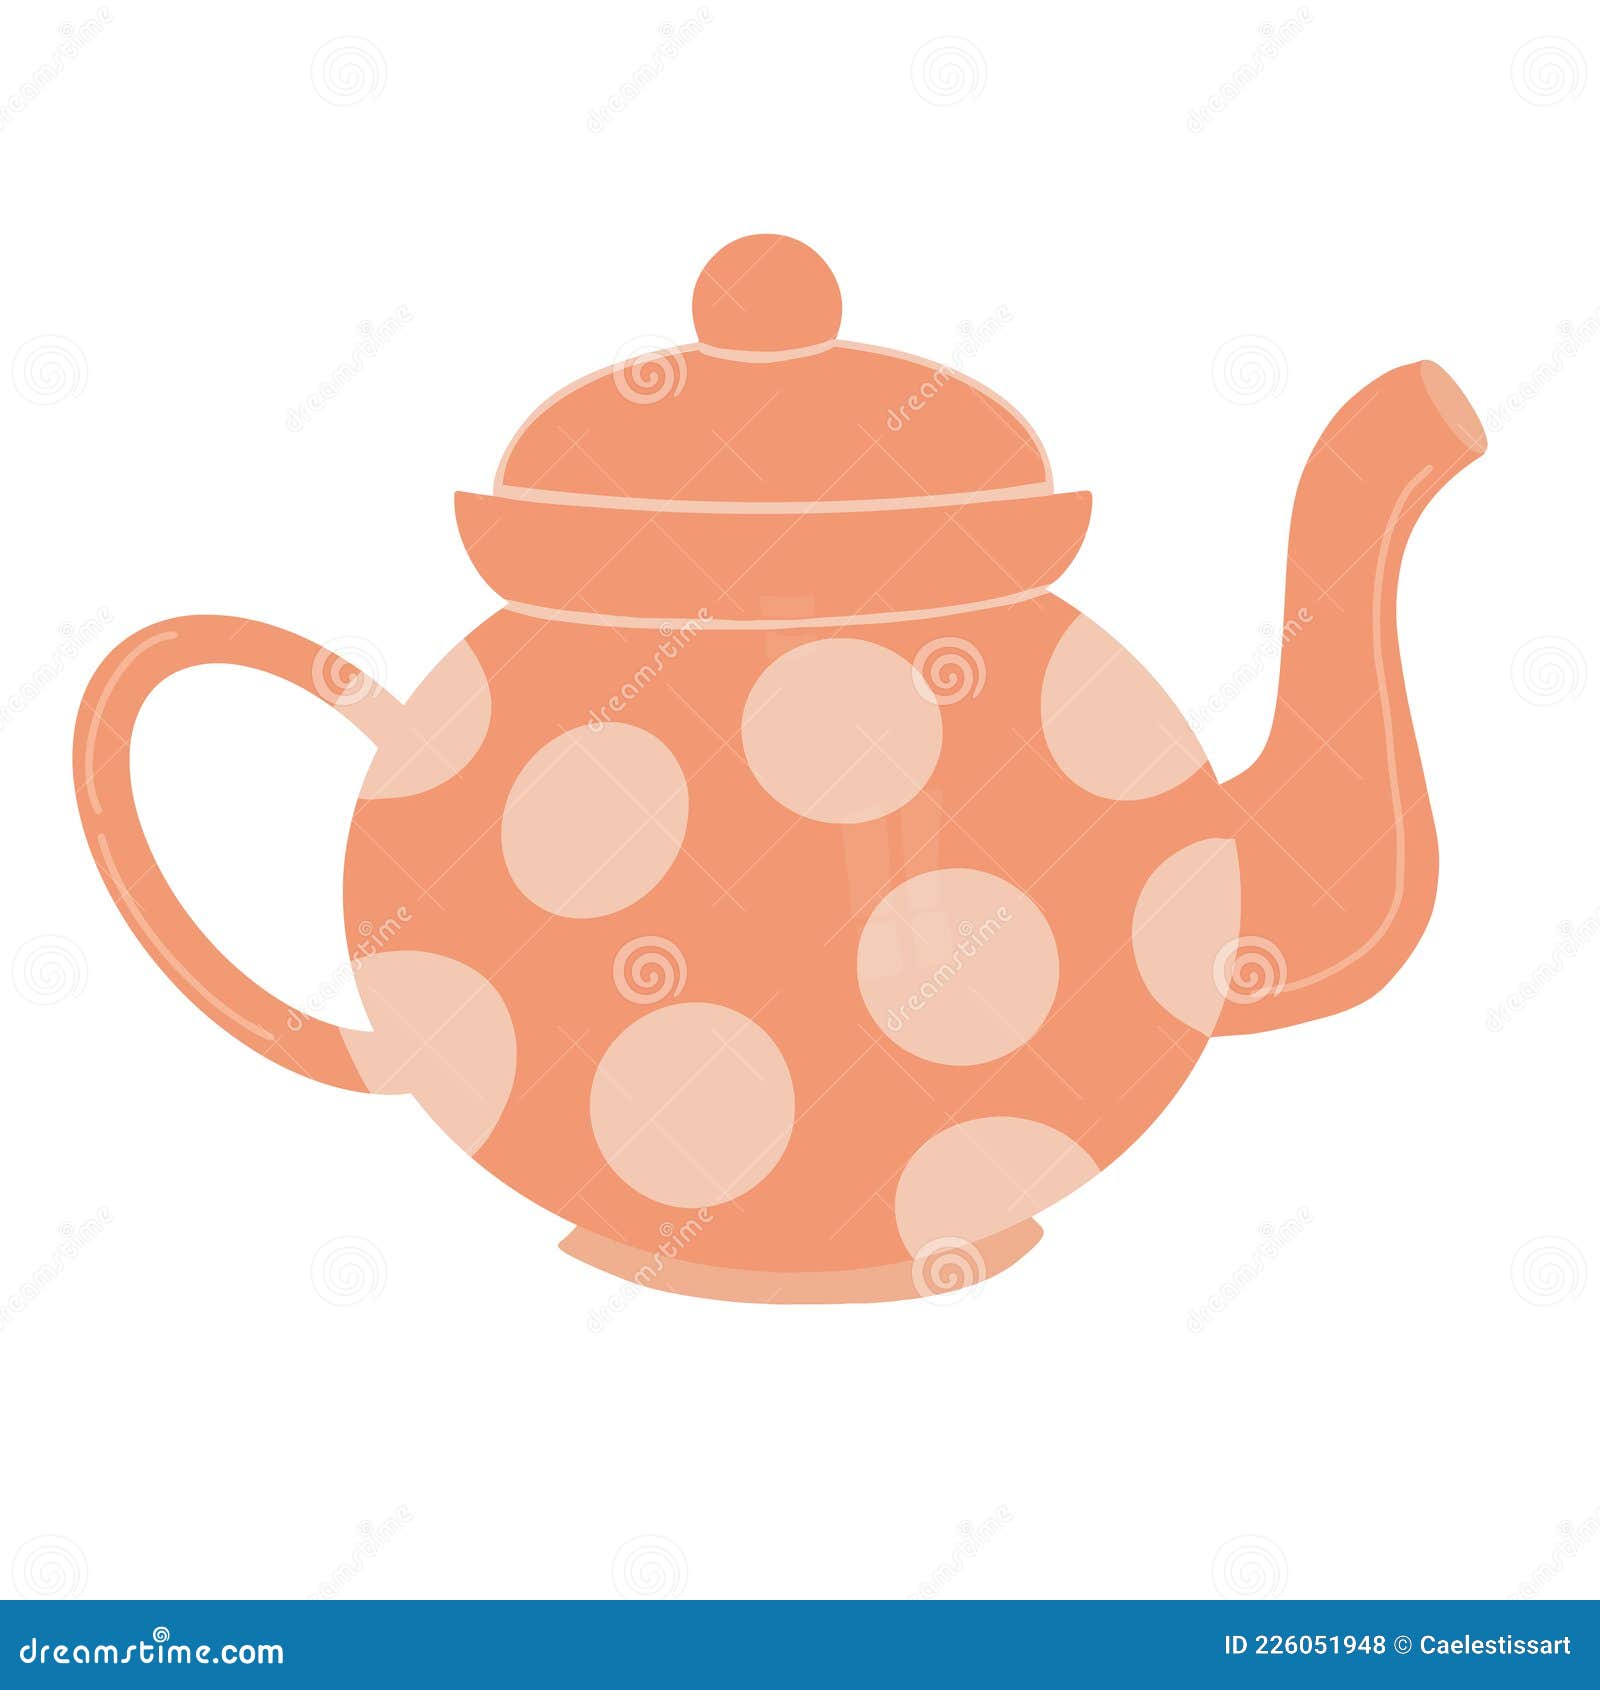 Cute Teapots, Vectors